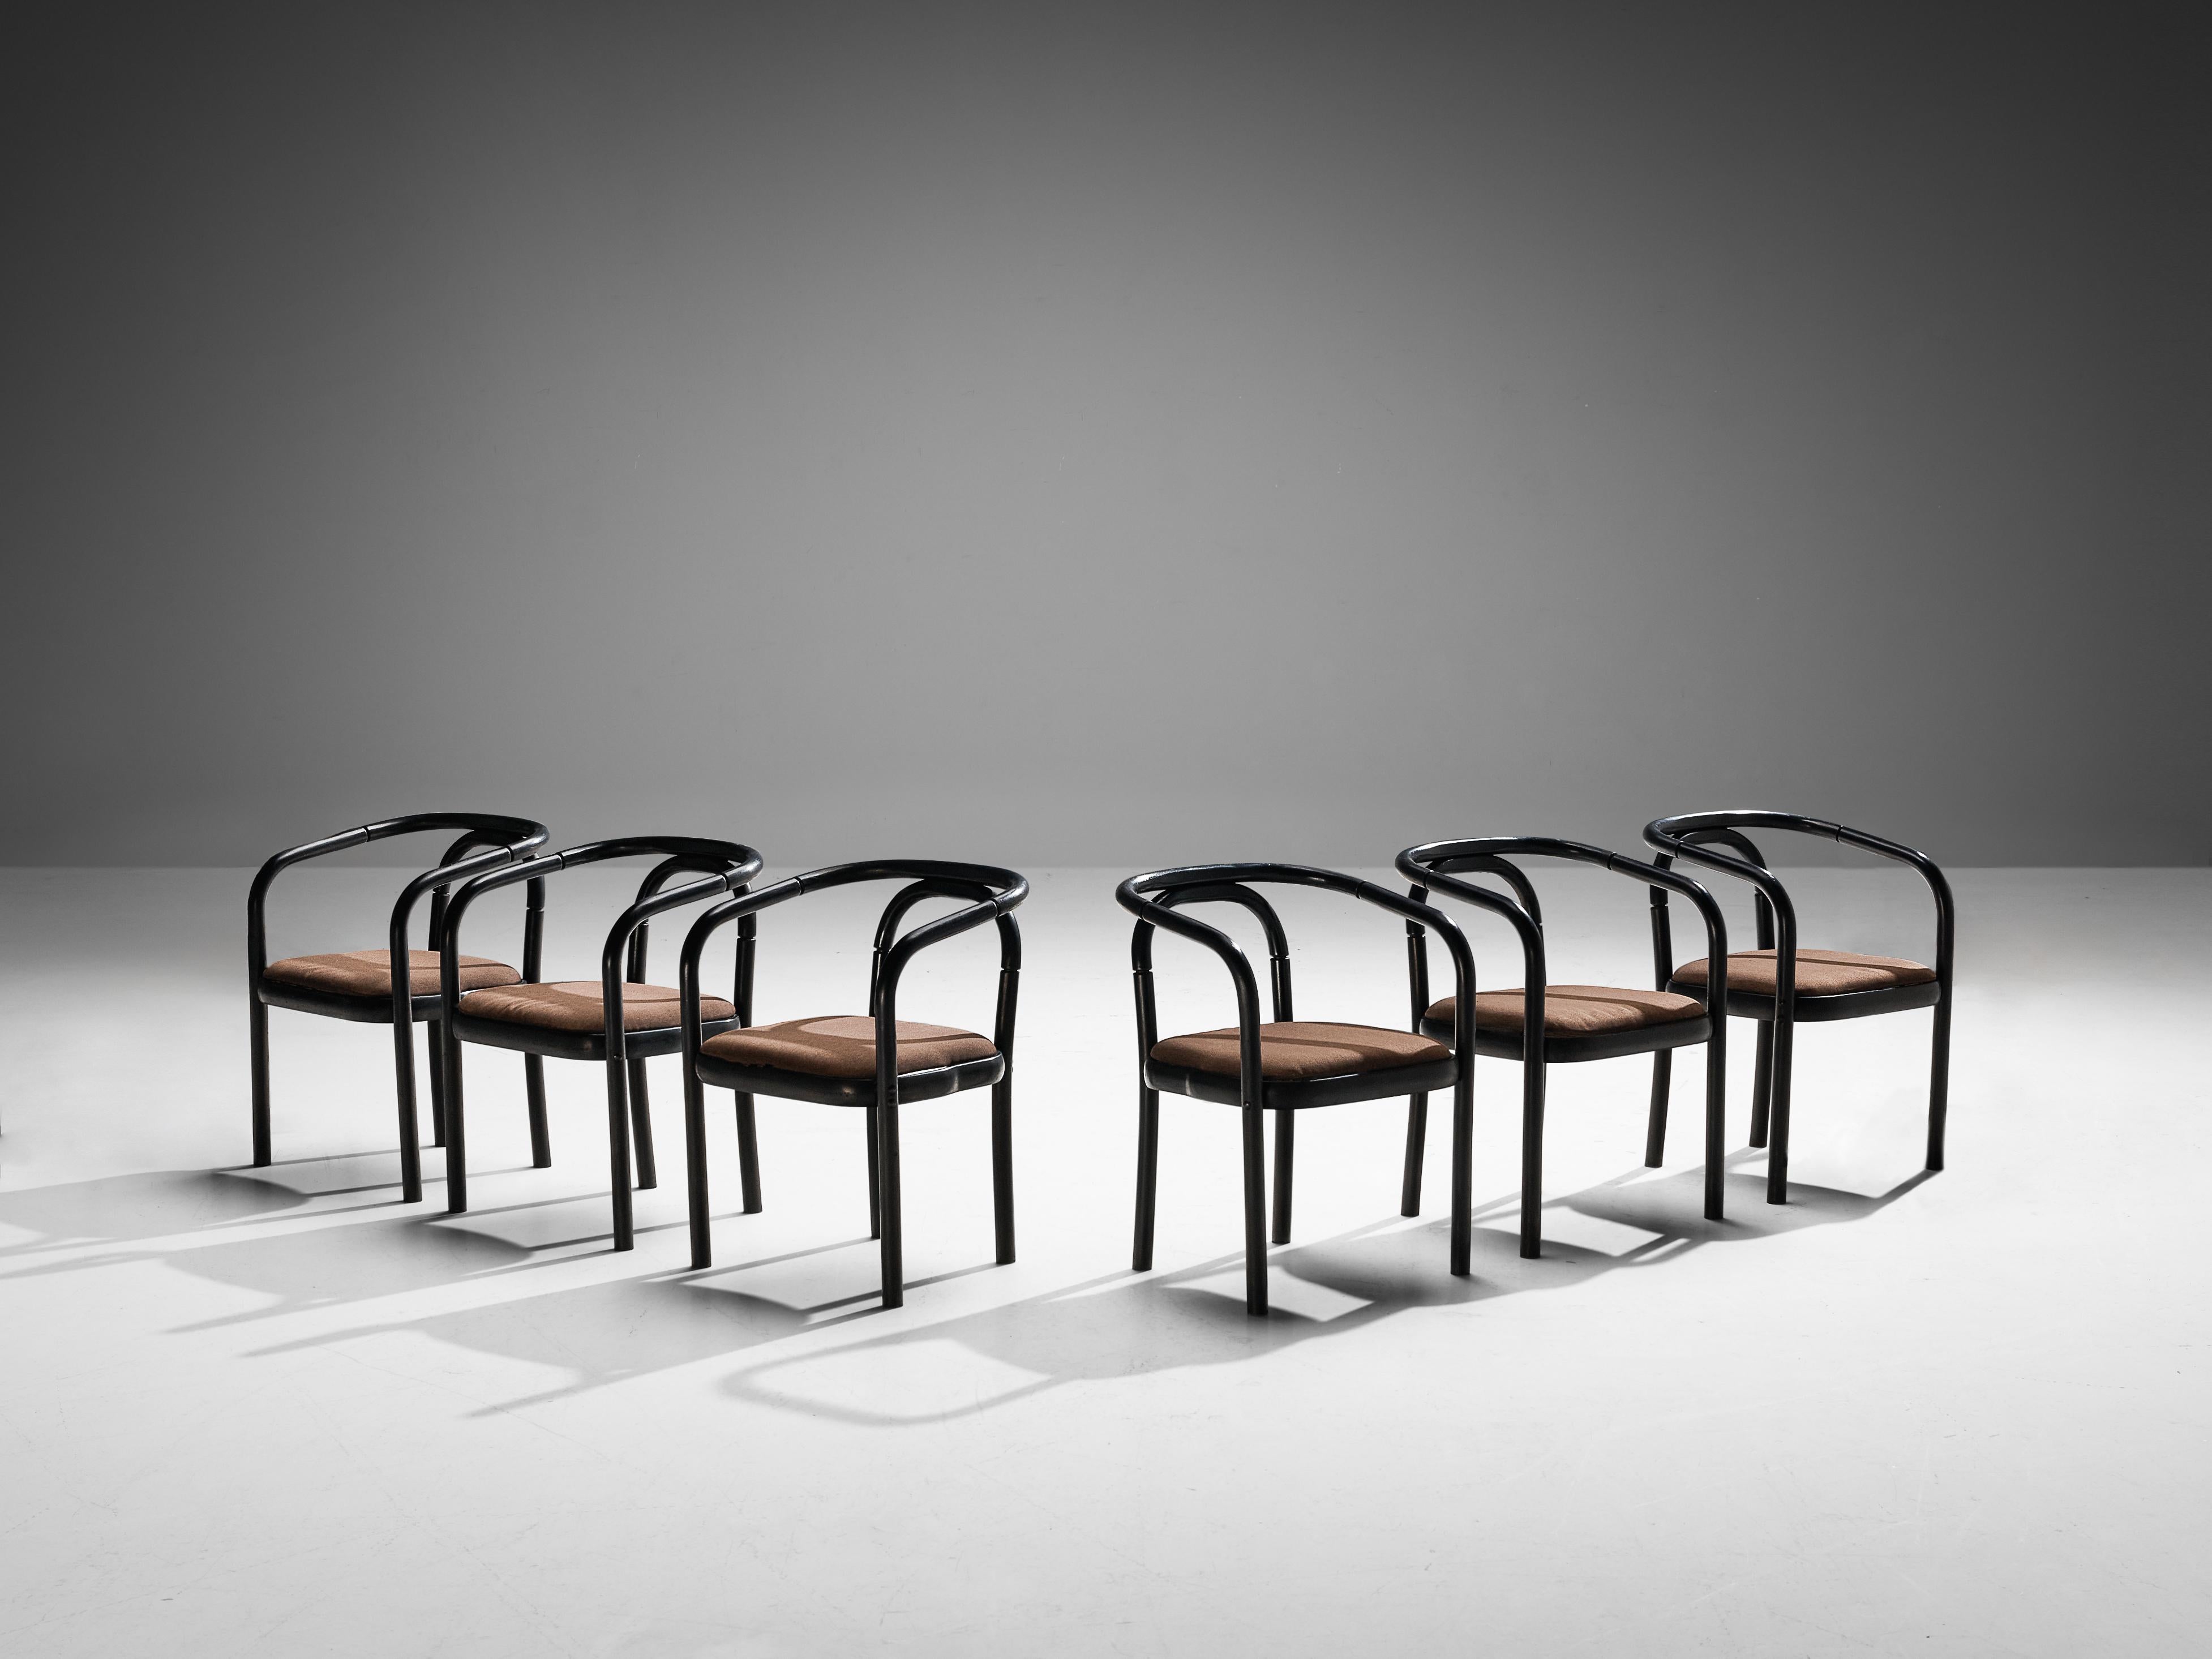 Antonin Suman pour les fauteuils TON, modèle E4309, bois laqué, tissu, République tchèque, 1977

Ces chaises ont été conçues par Antonin Suman et fabriquées par TON. Le design se caractérise par un magnifique cadre en bois courbé fini en laque